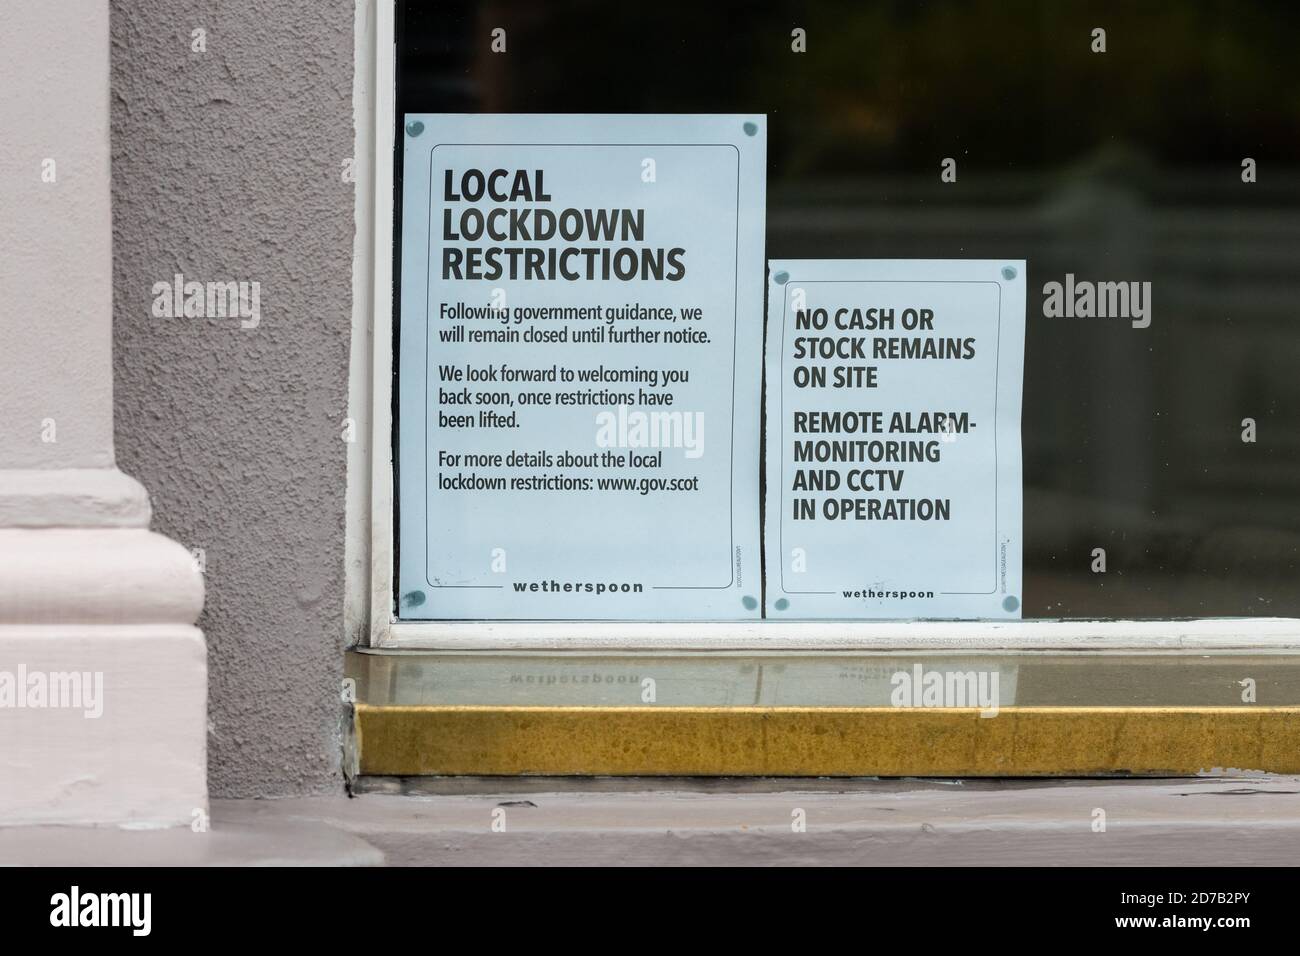 Las restricciones locales de encierro aviso en Wetherspoons como la hospitalidad temporal restringe en lugar de cierre de bares y restaurantes en Edimburgo, Escocia, Reino Unido Foto de stock